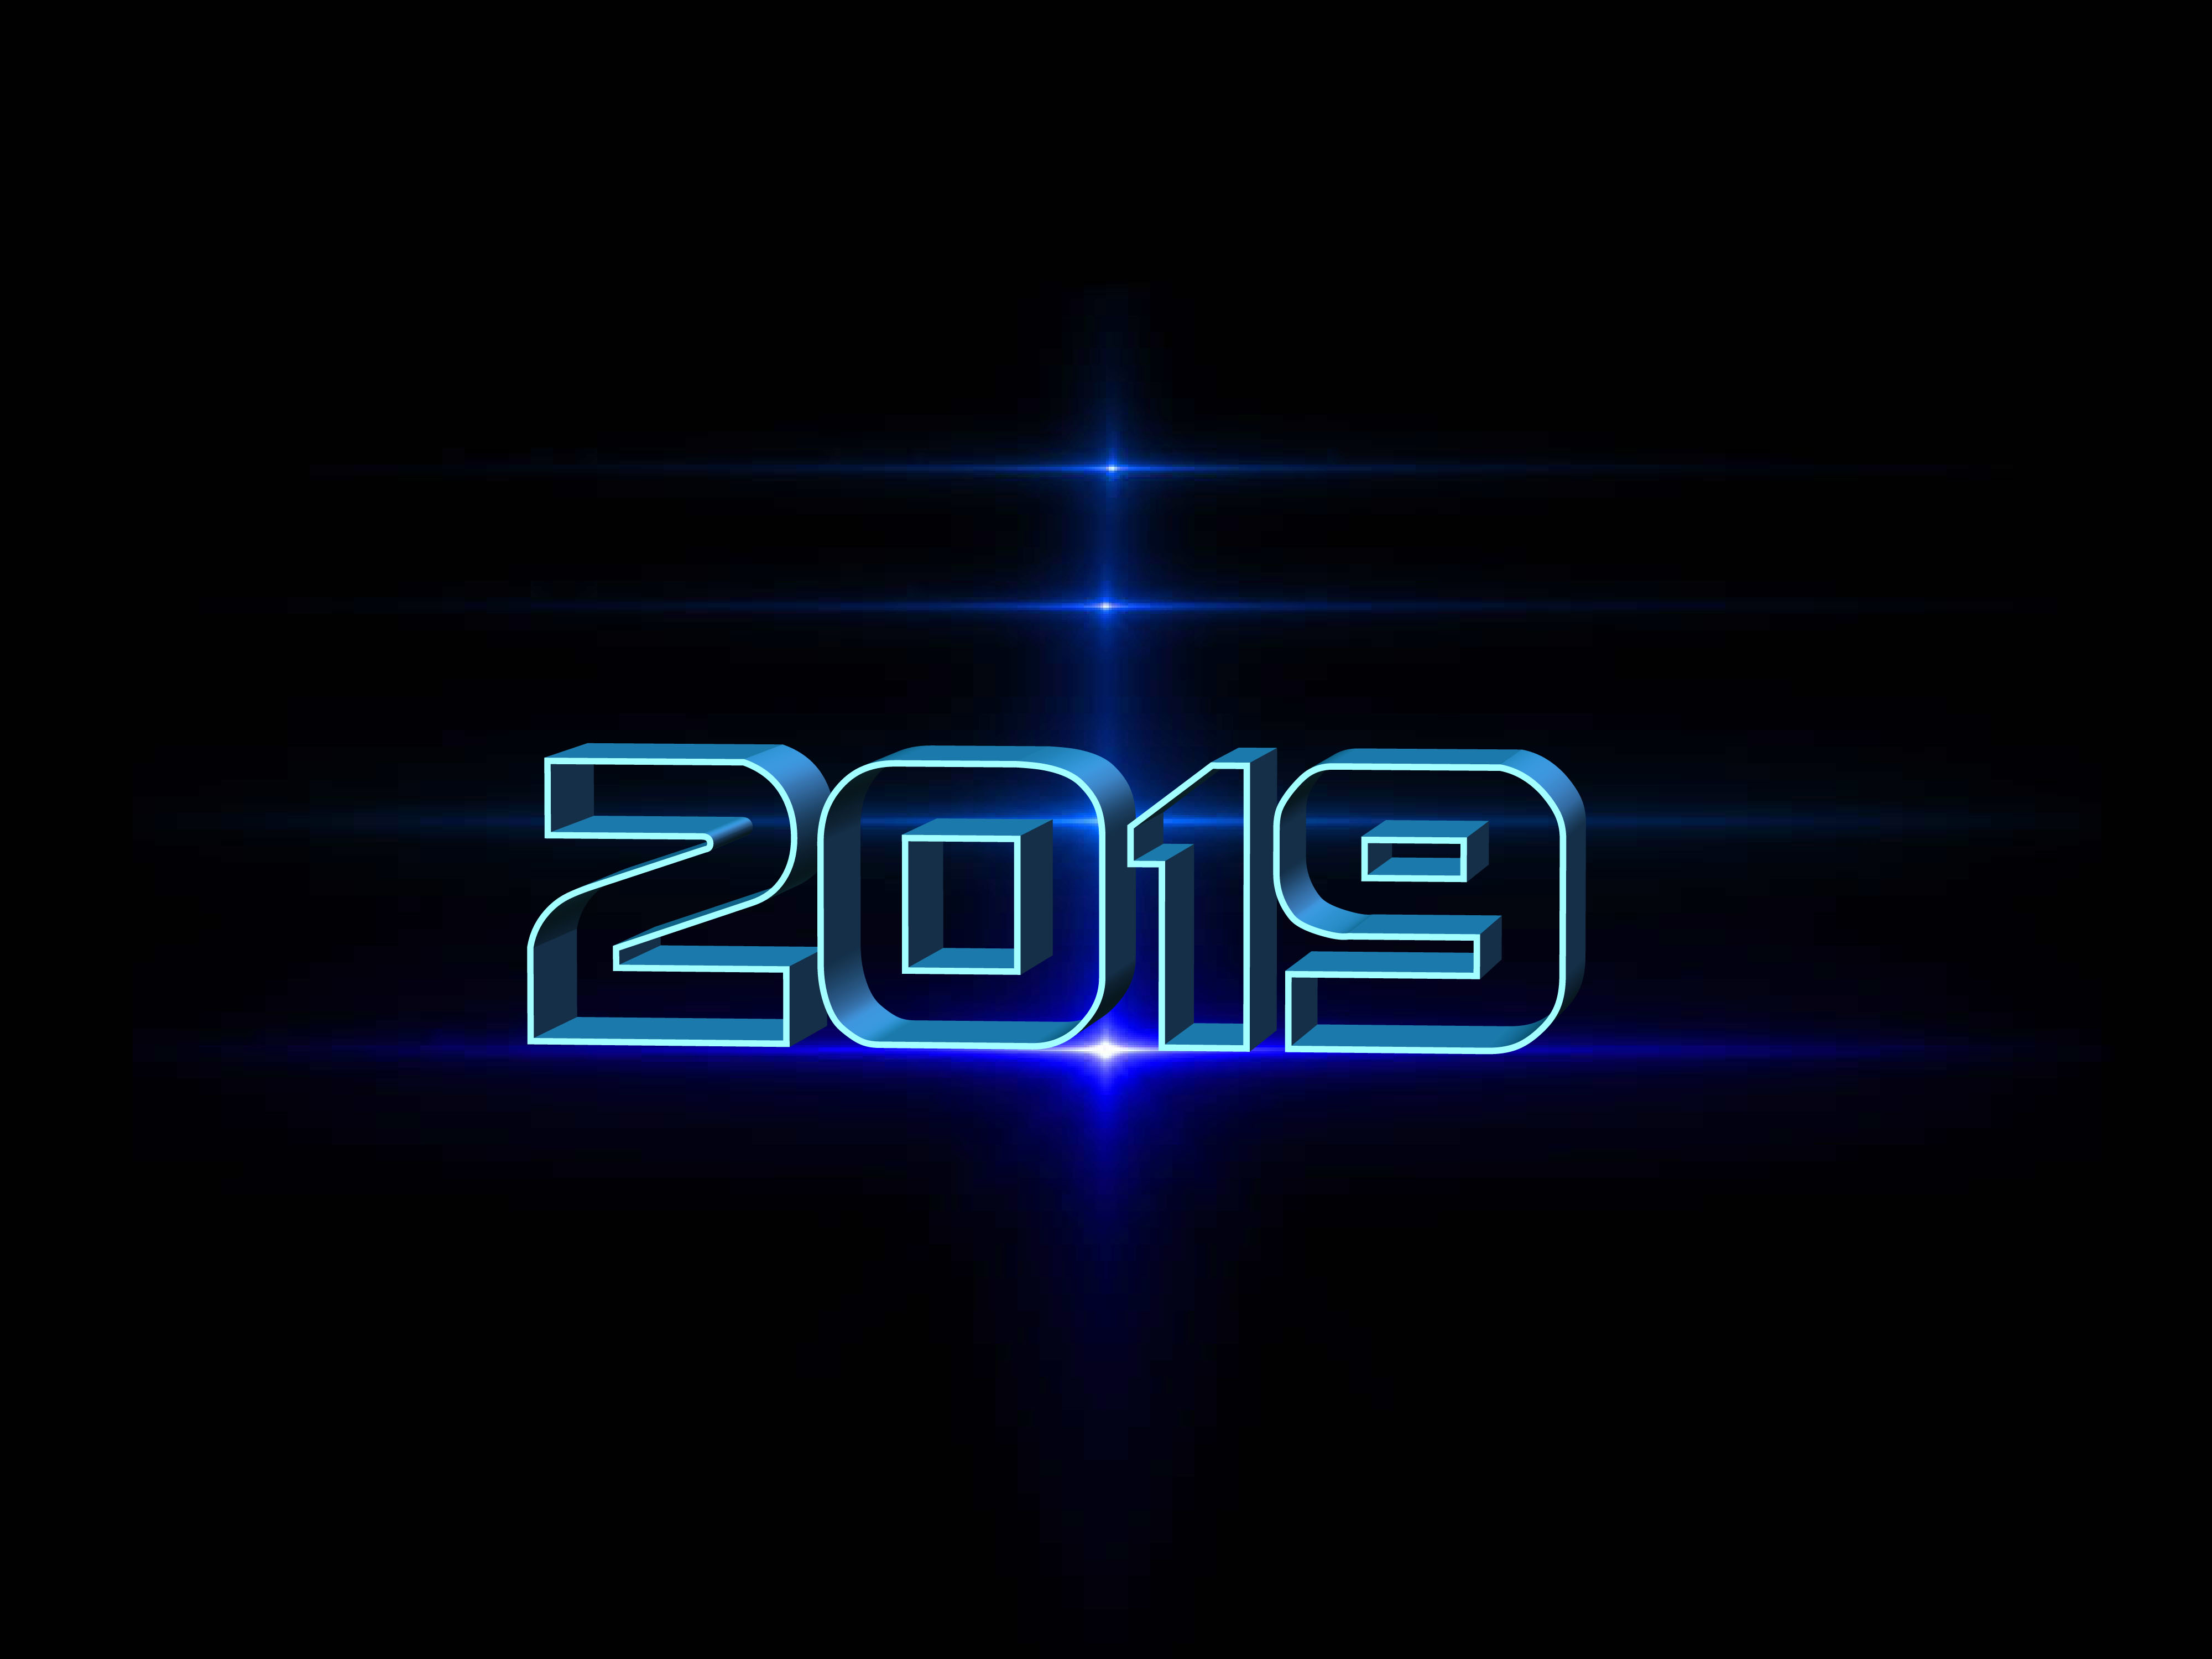 Year 2019 by Susanlu4esm